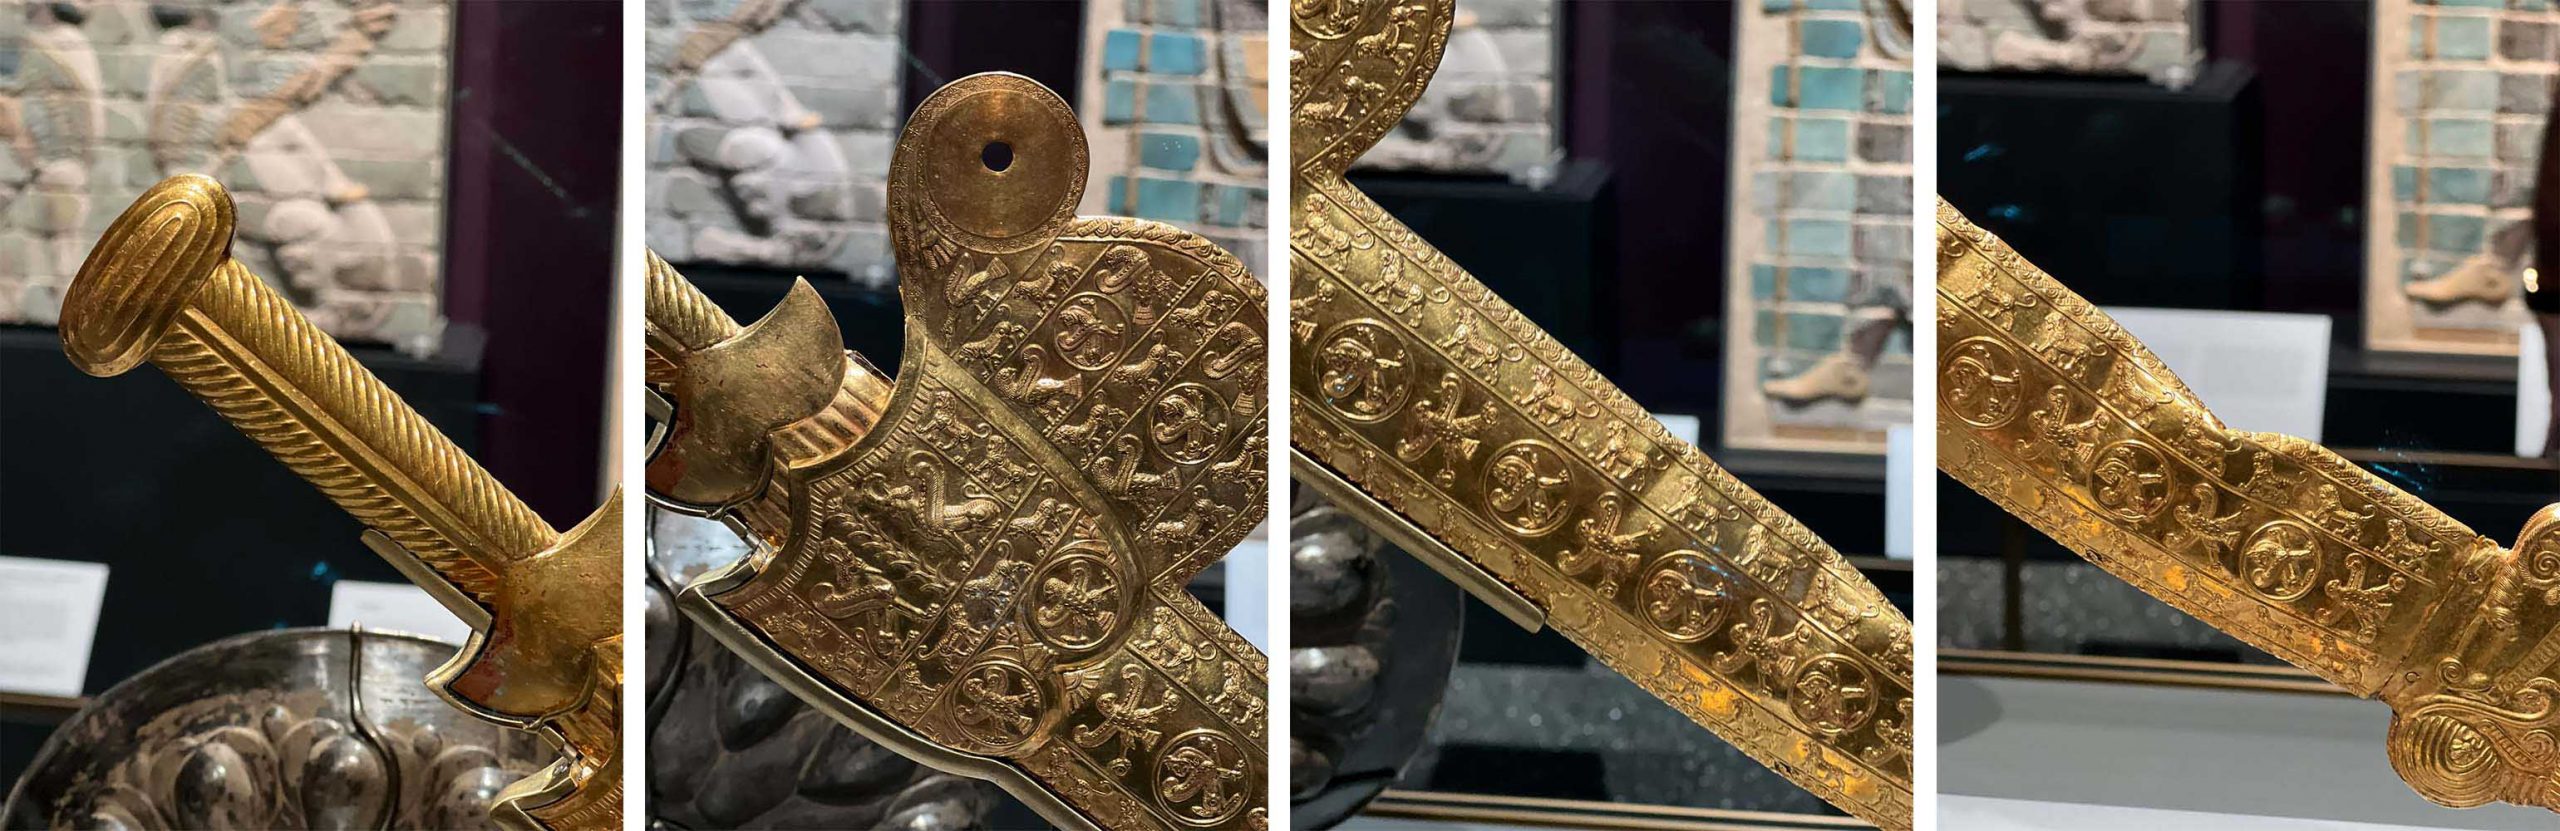 خنجر زرین اردشیر یکم برای نخستین بار در موزه گتی رونمایی شد